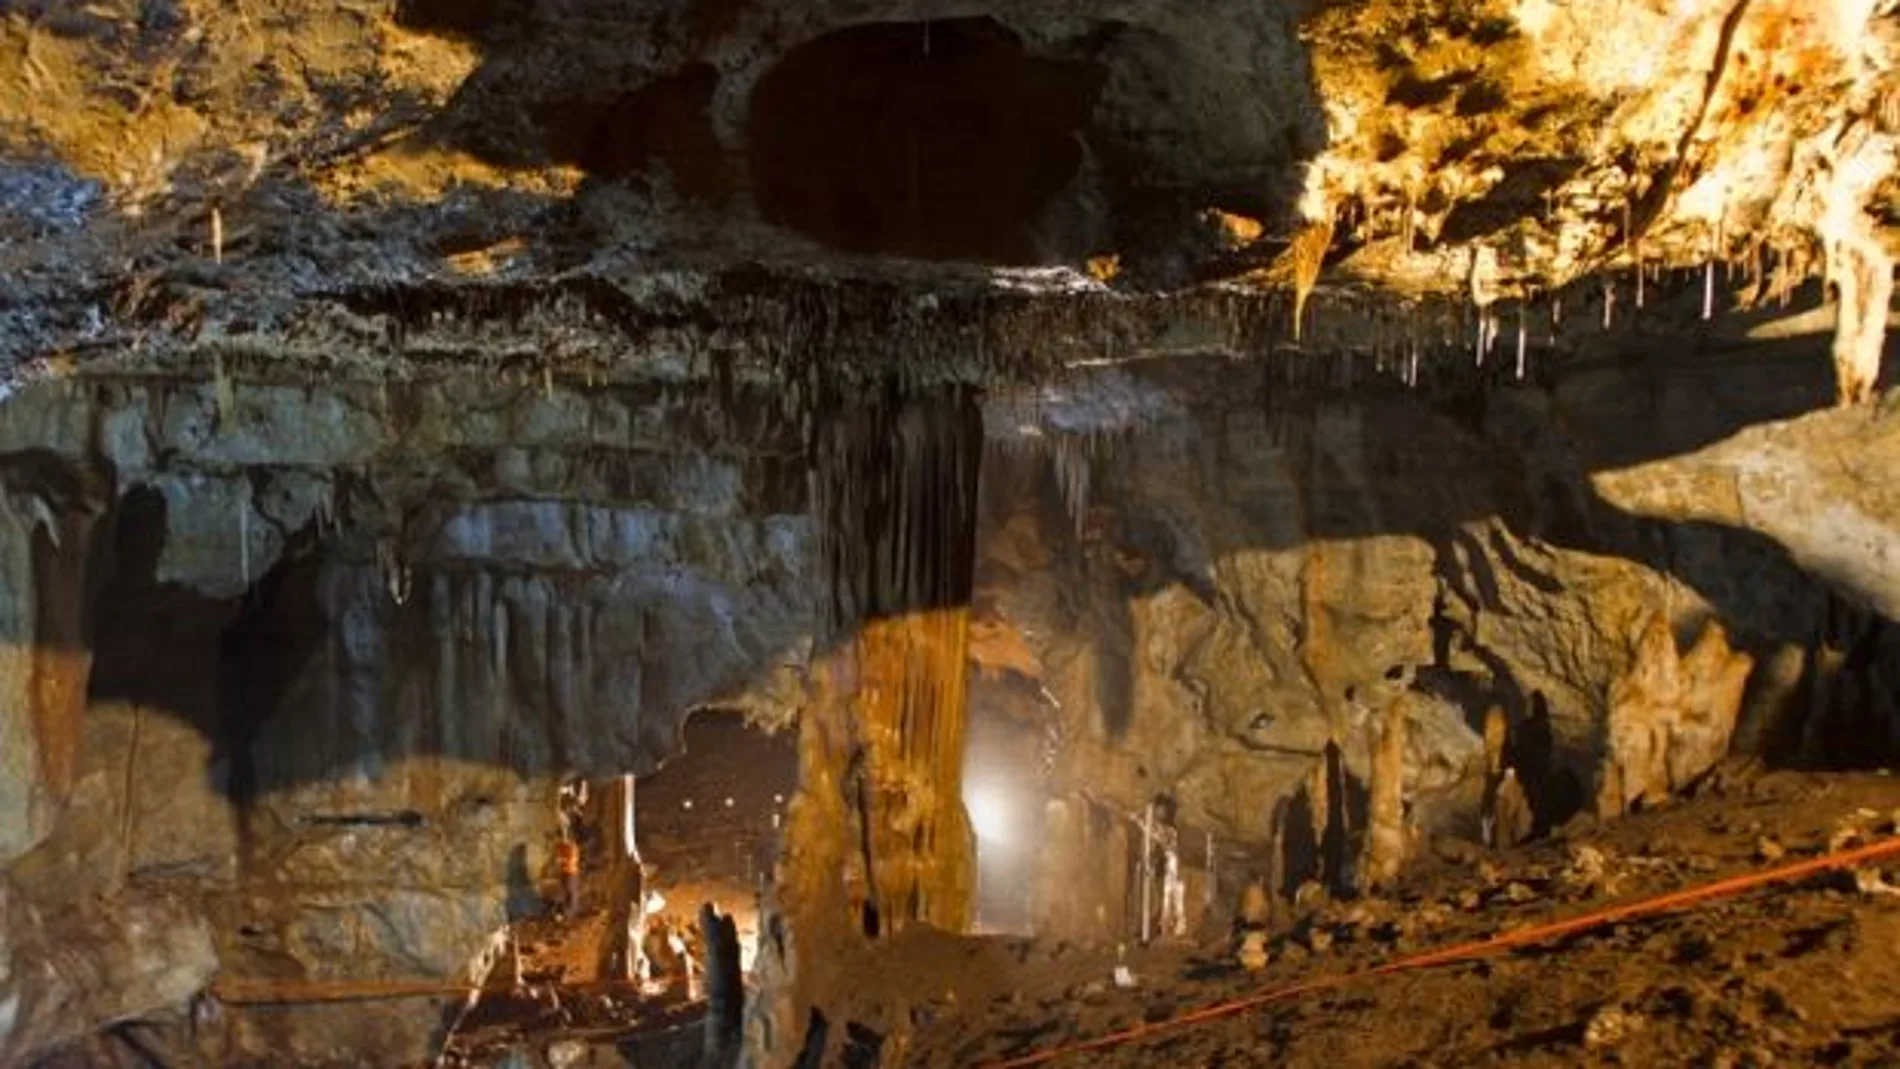 Manot es una cueva prehistórica con una impresionante secuencia arqueológica y espectaculares espeleotemas